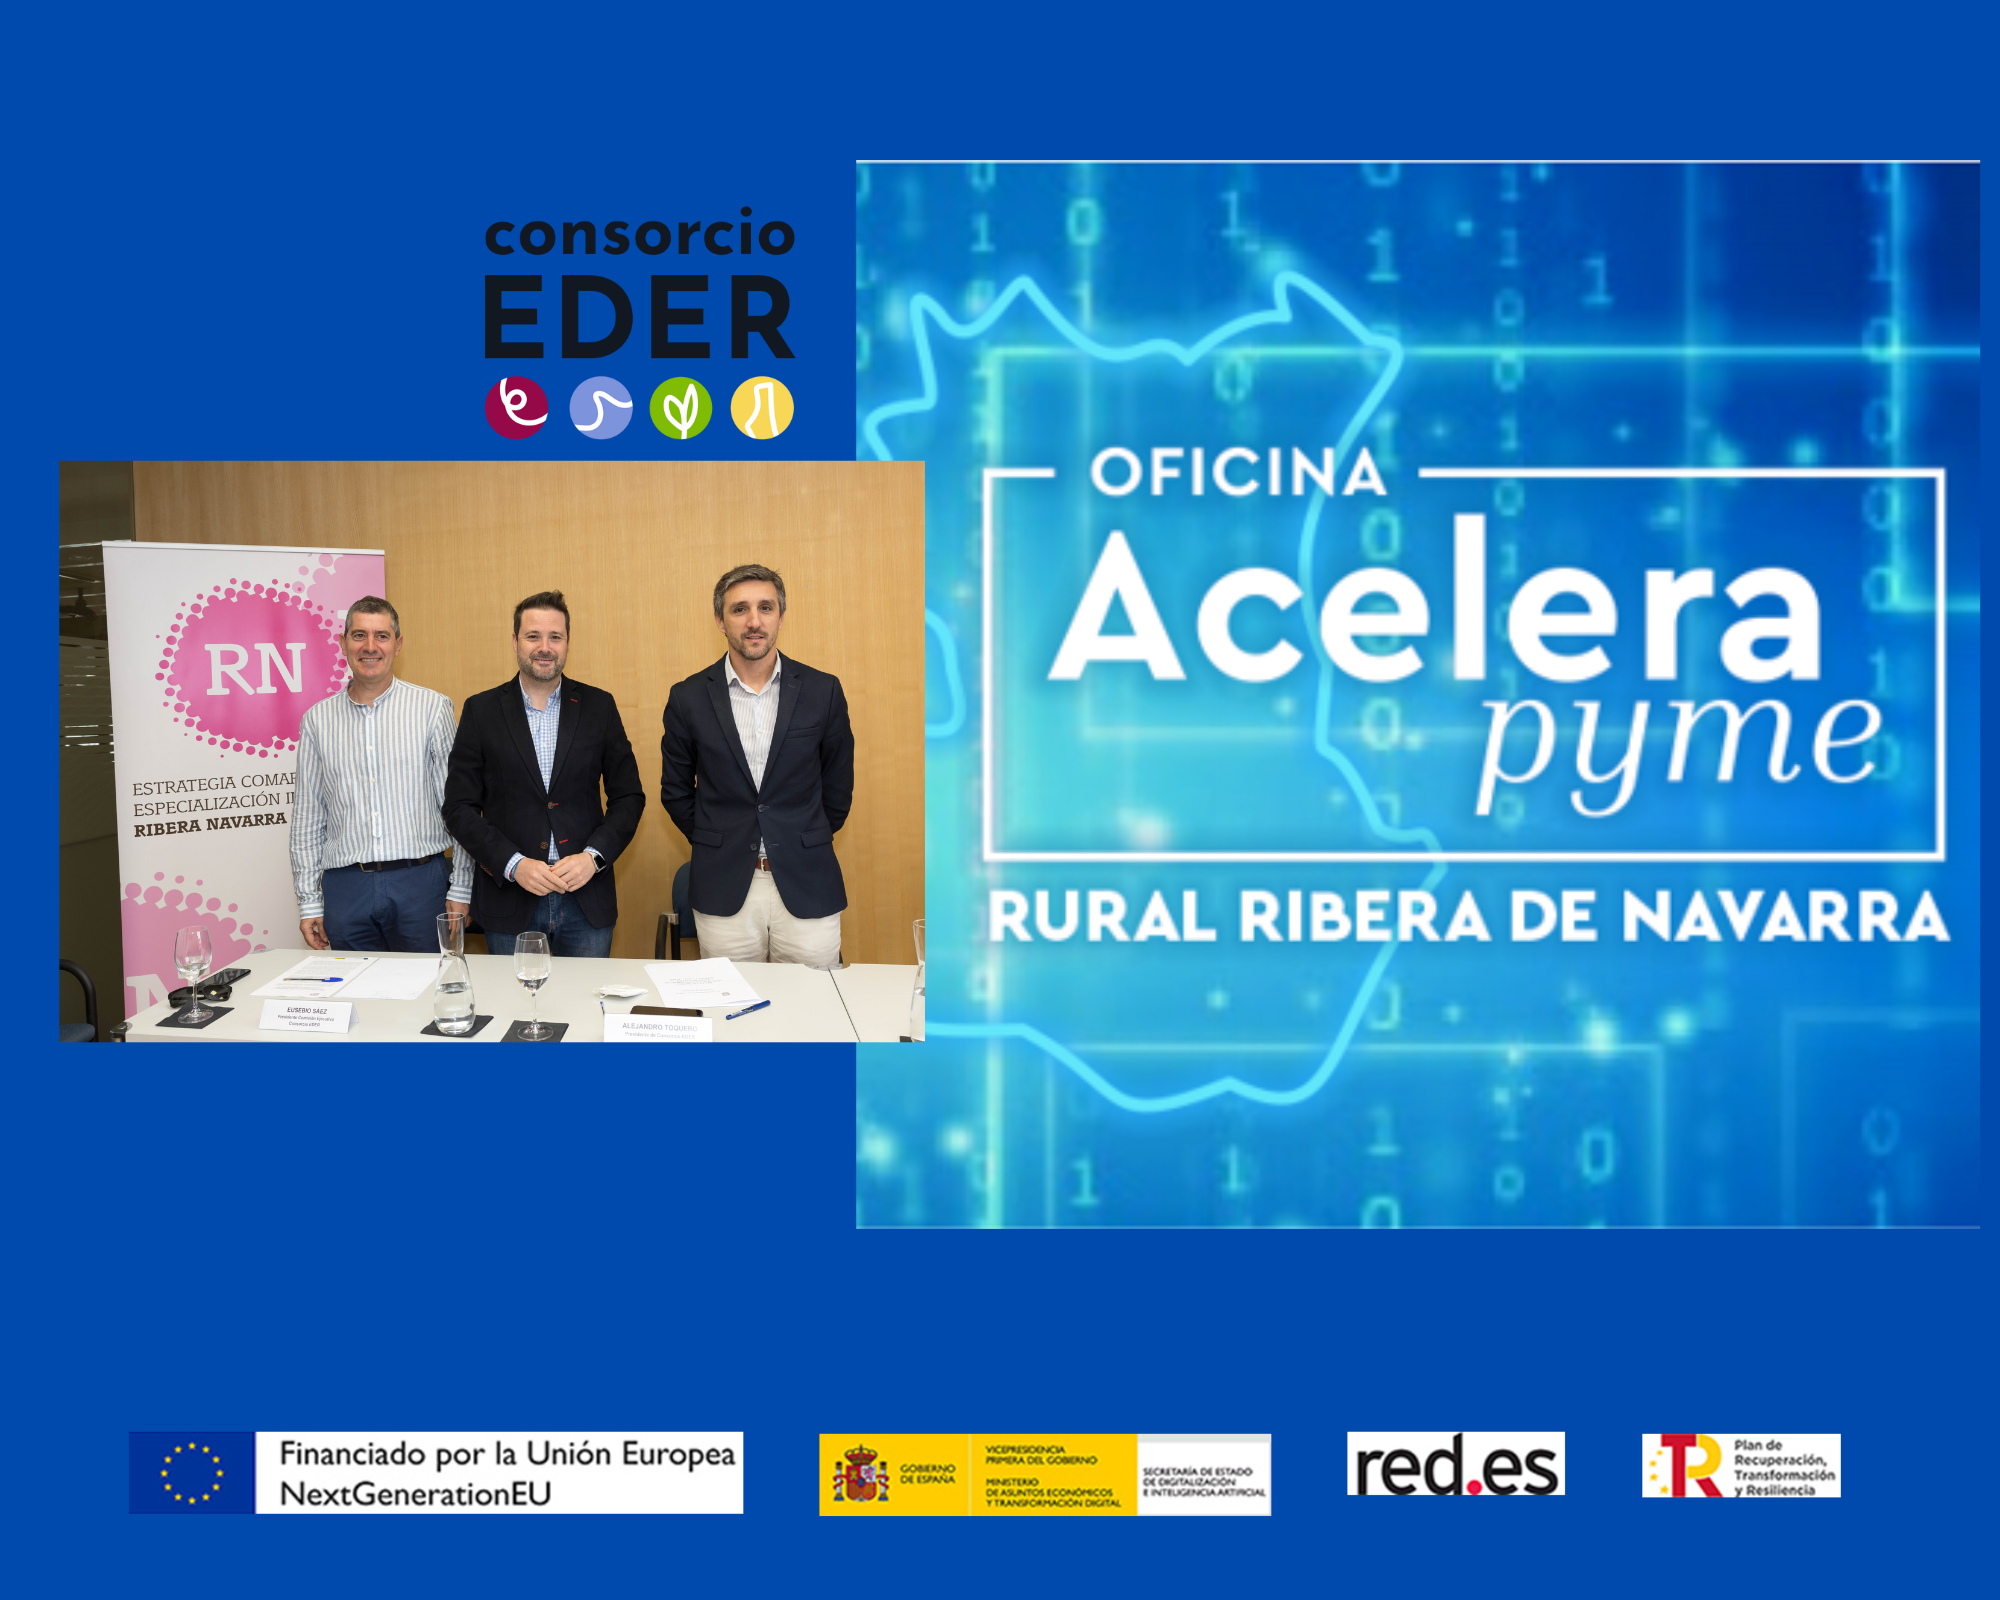 Consorcio EDER pone en marcha la oficina “Acelera Pyme Rural Ribera de Navarra” para impulsar la digitalización de las pequeñas empresas de la Ribera de Navarra